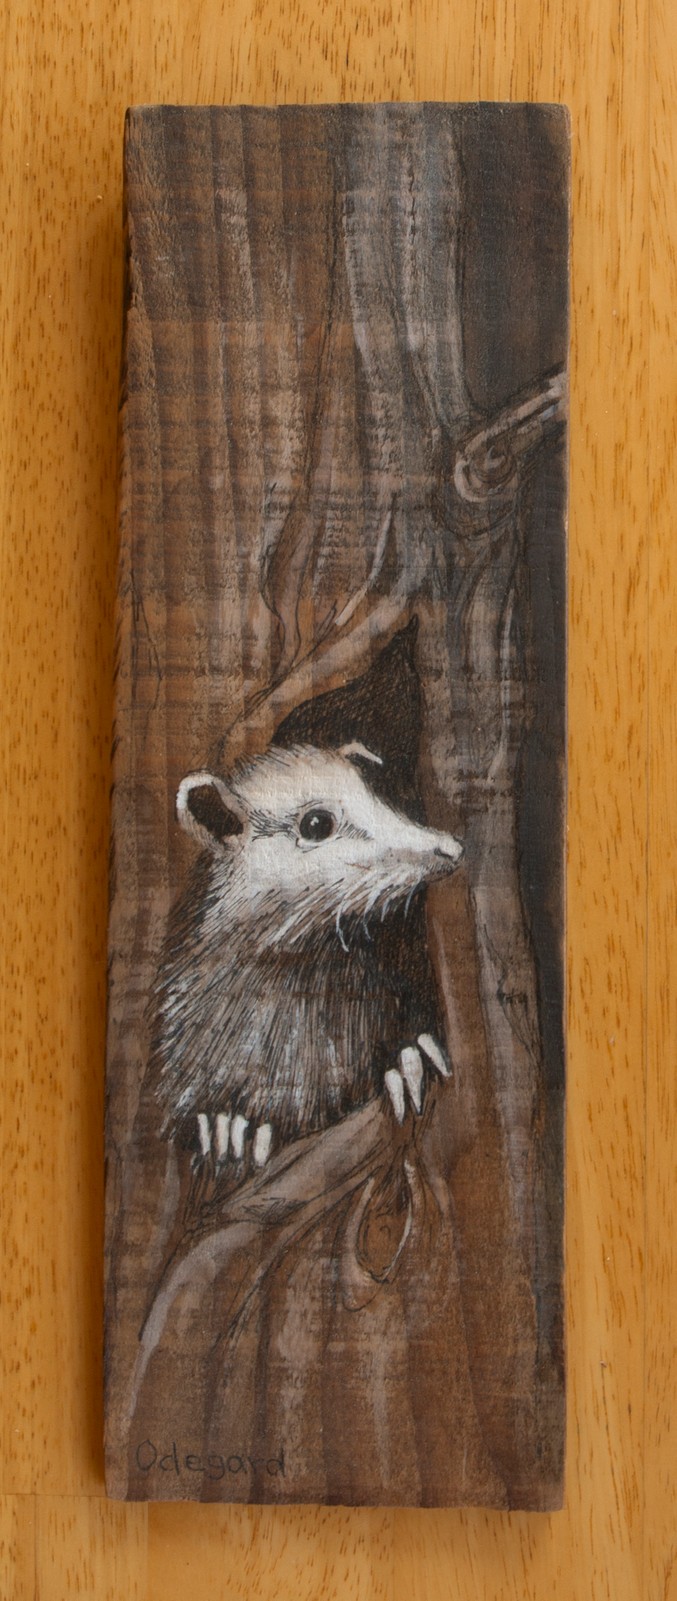 Opossum on Wood